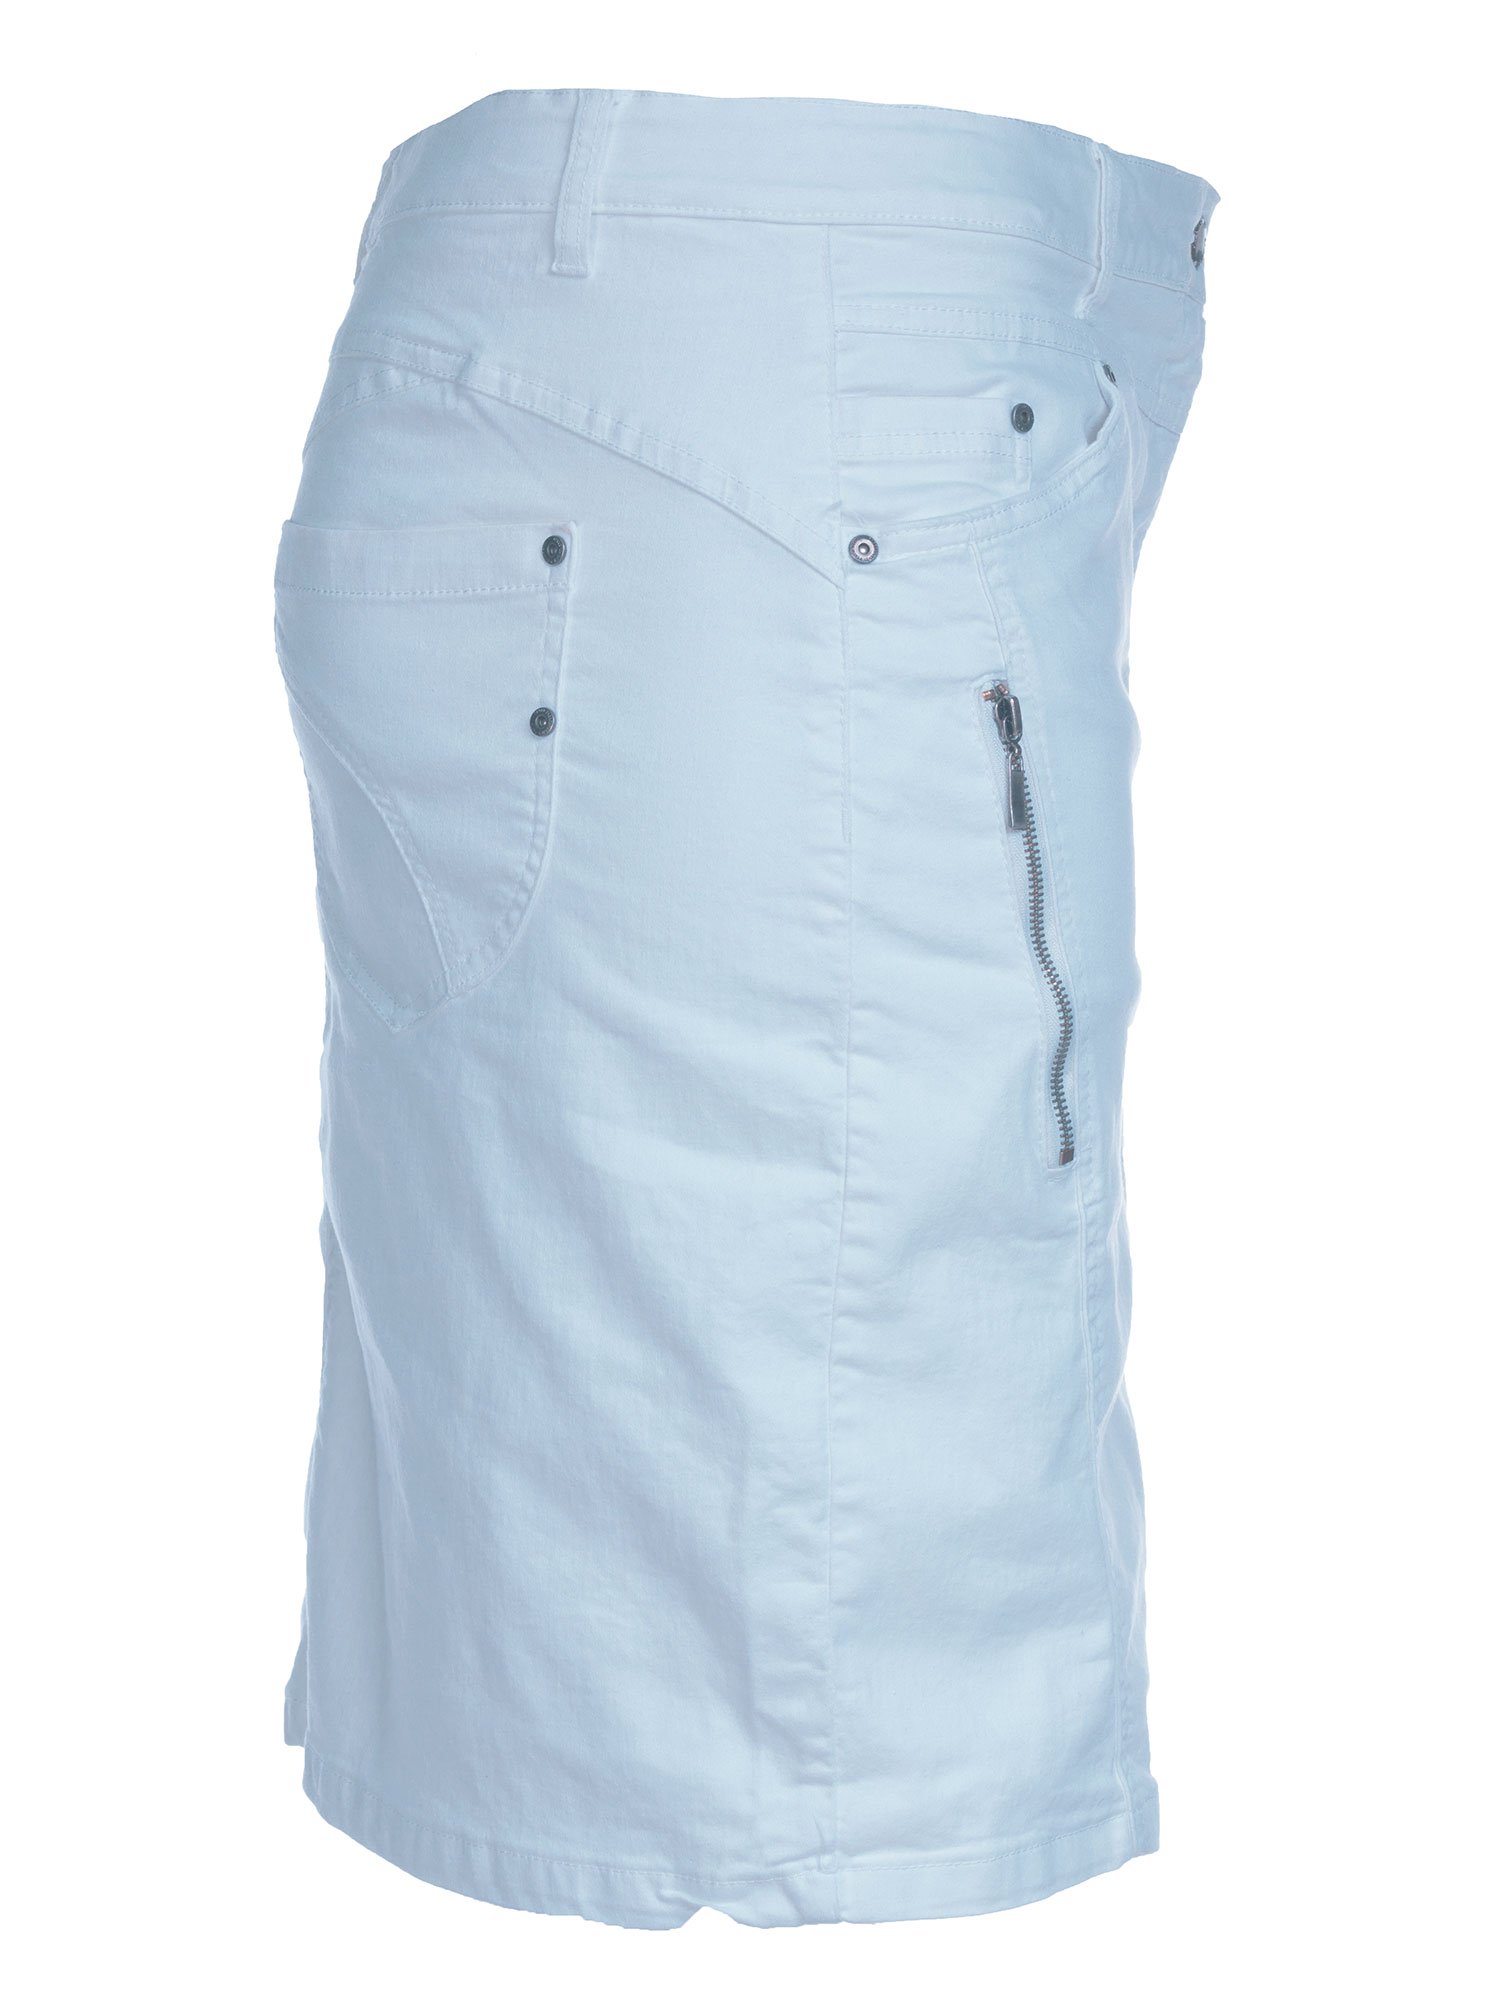 Lyseblå stræk nederdel med skånebukser fra Zhenzi